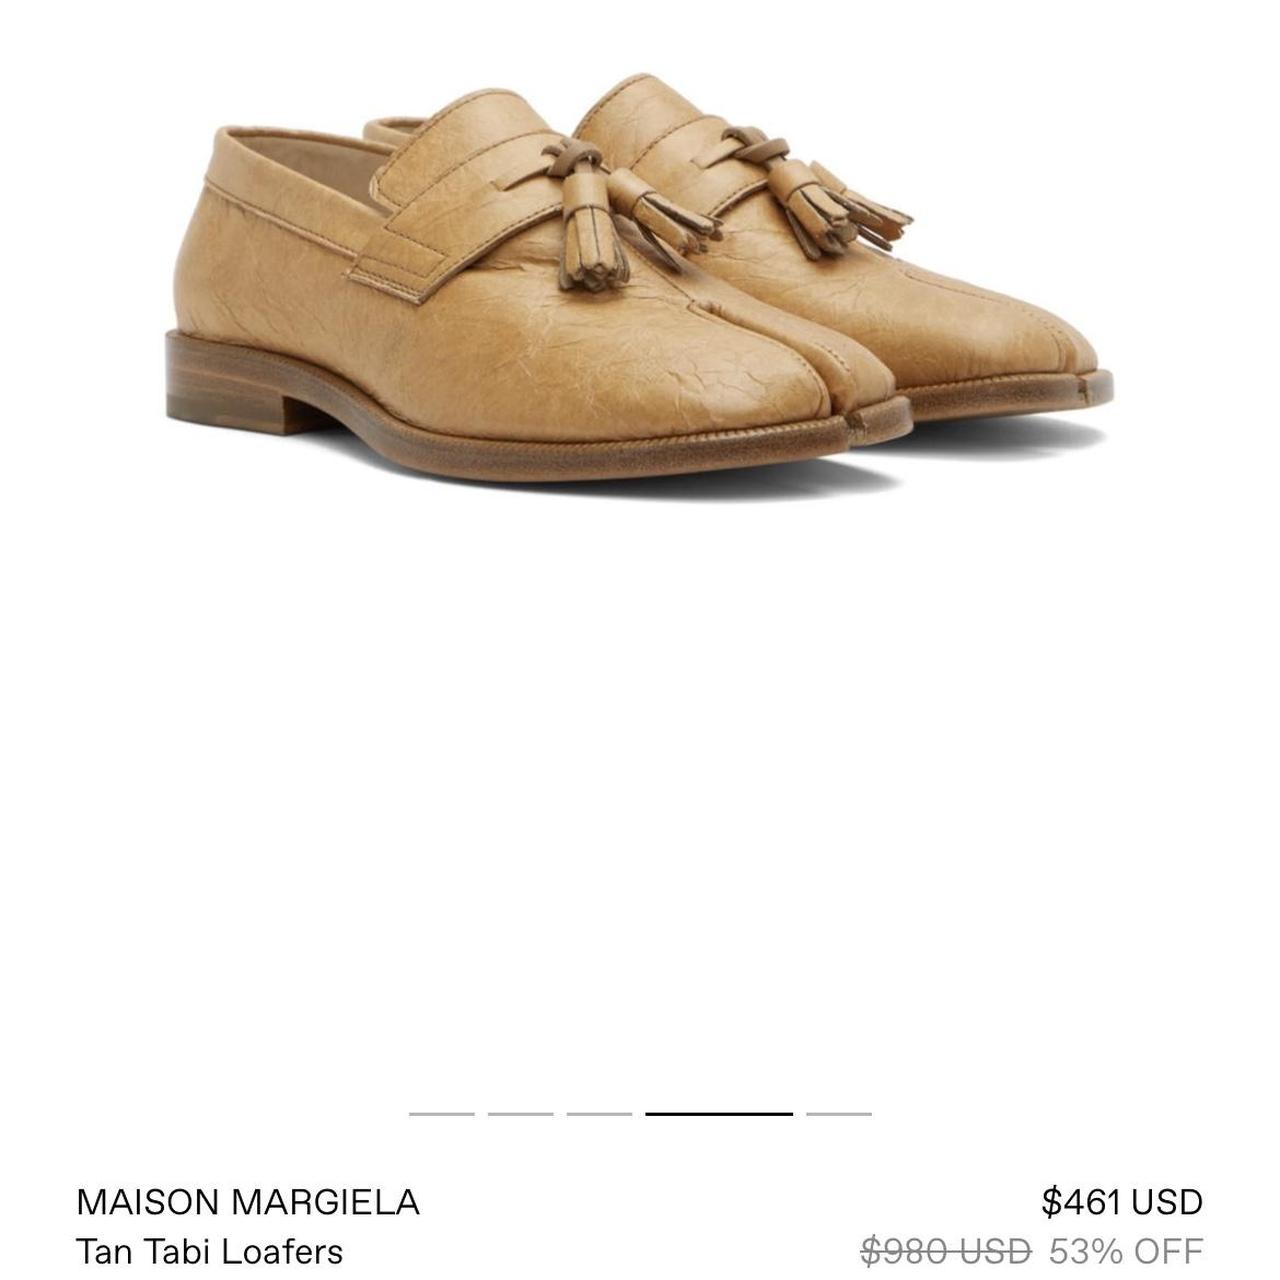 Maison Margiela Women's Tan Loafers